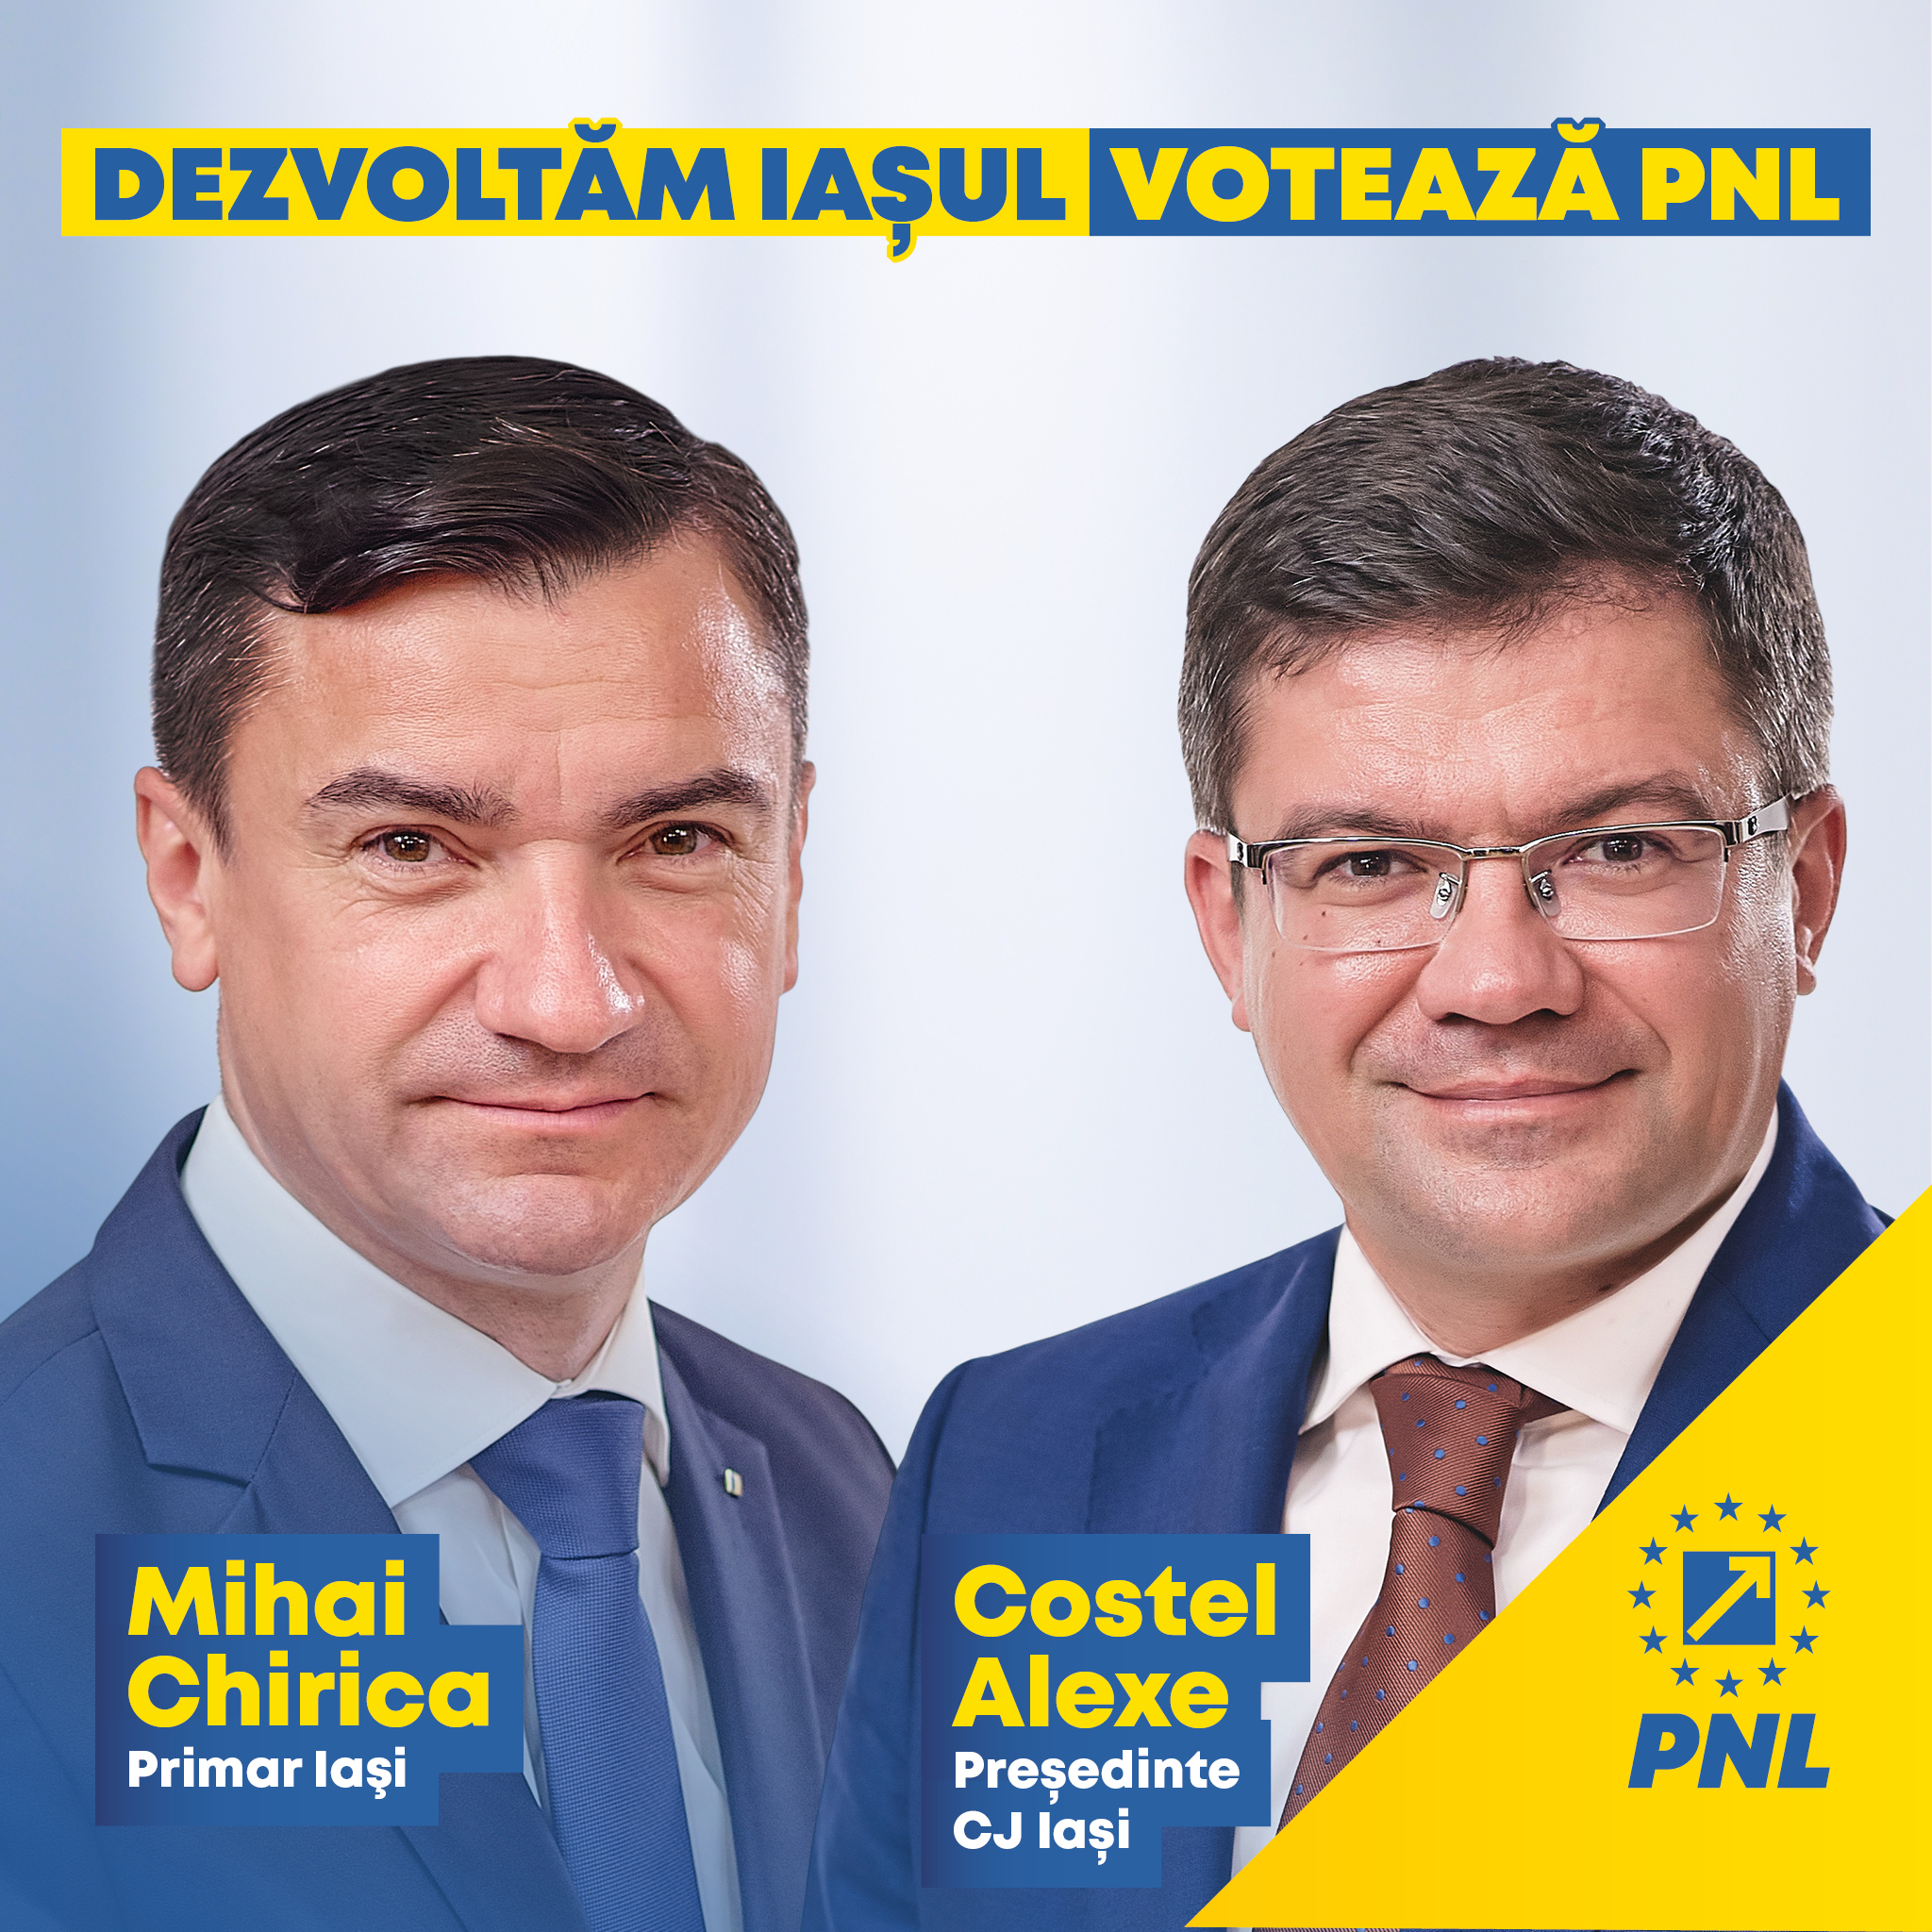 Facem echipă pentru Iași! Susținem PNL la alegerile din 6 decembrie!